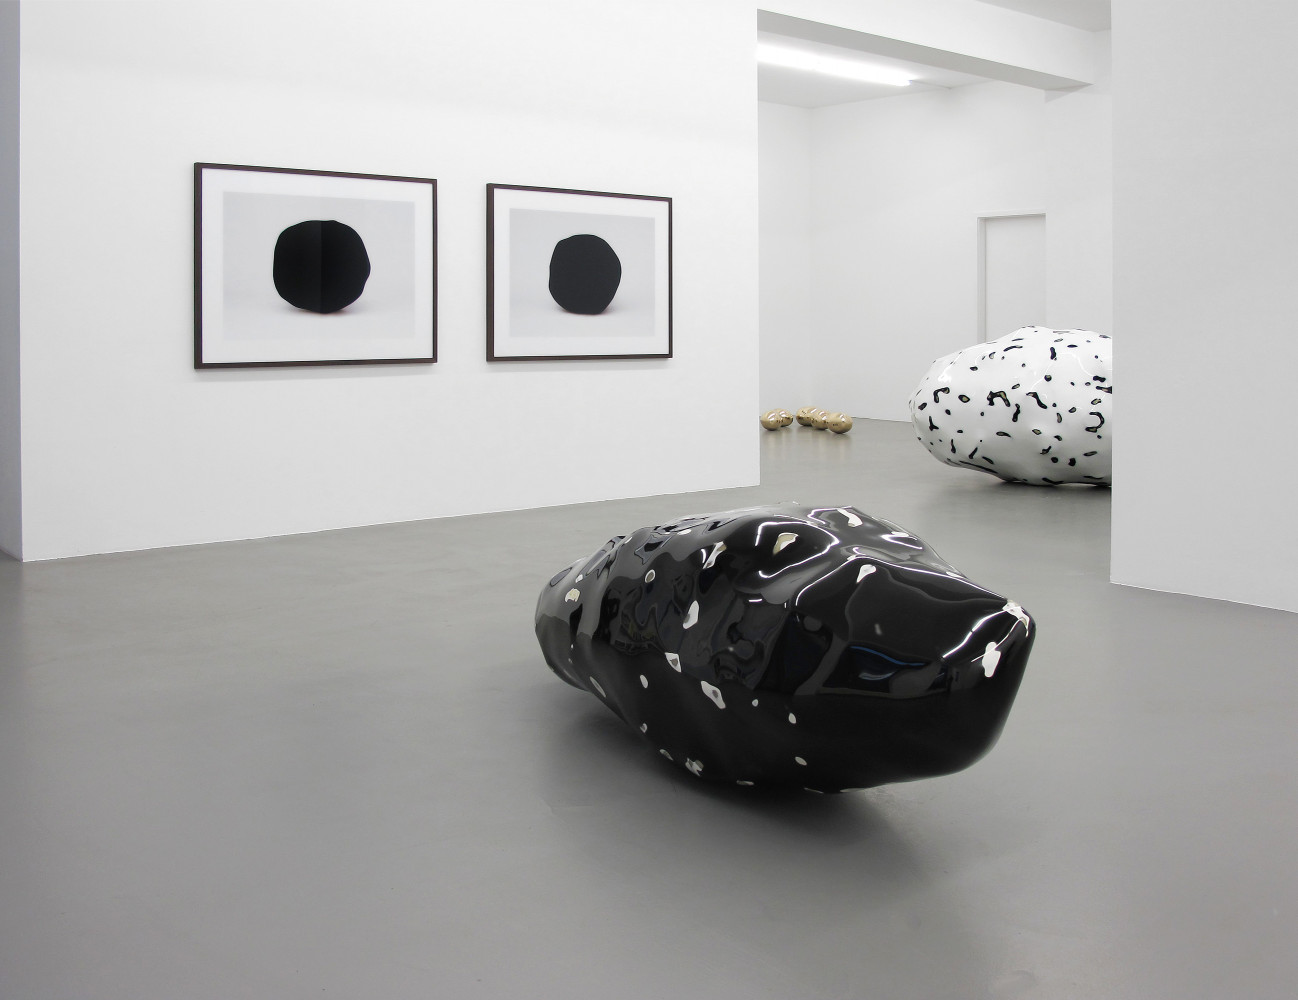 Wilhelm Mundt, ‘Klumpen’, Installation view, Buchmann Galerie, 2015